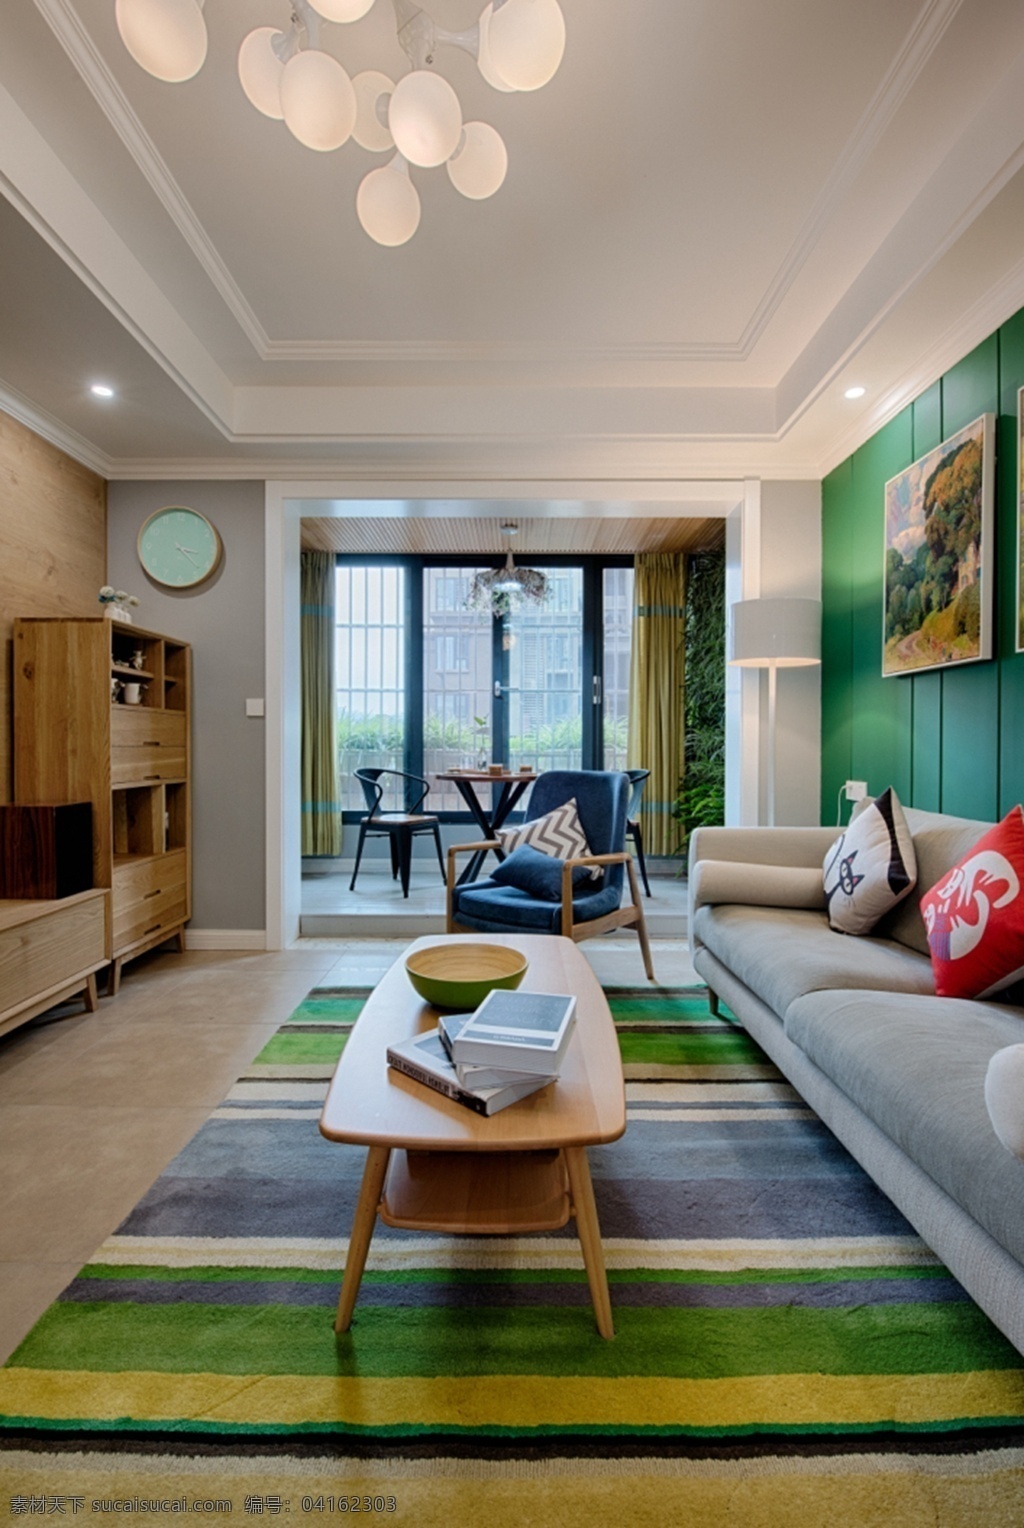 现代 时尚 客厅 灰色 绒 质 沙发 室内装修 效果图 灰色沙发 客厅装修 绿色背景墙 绿色条纹地毯